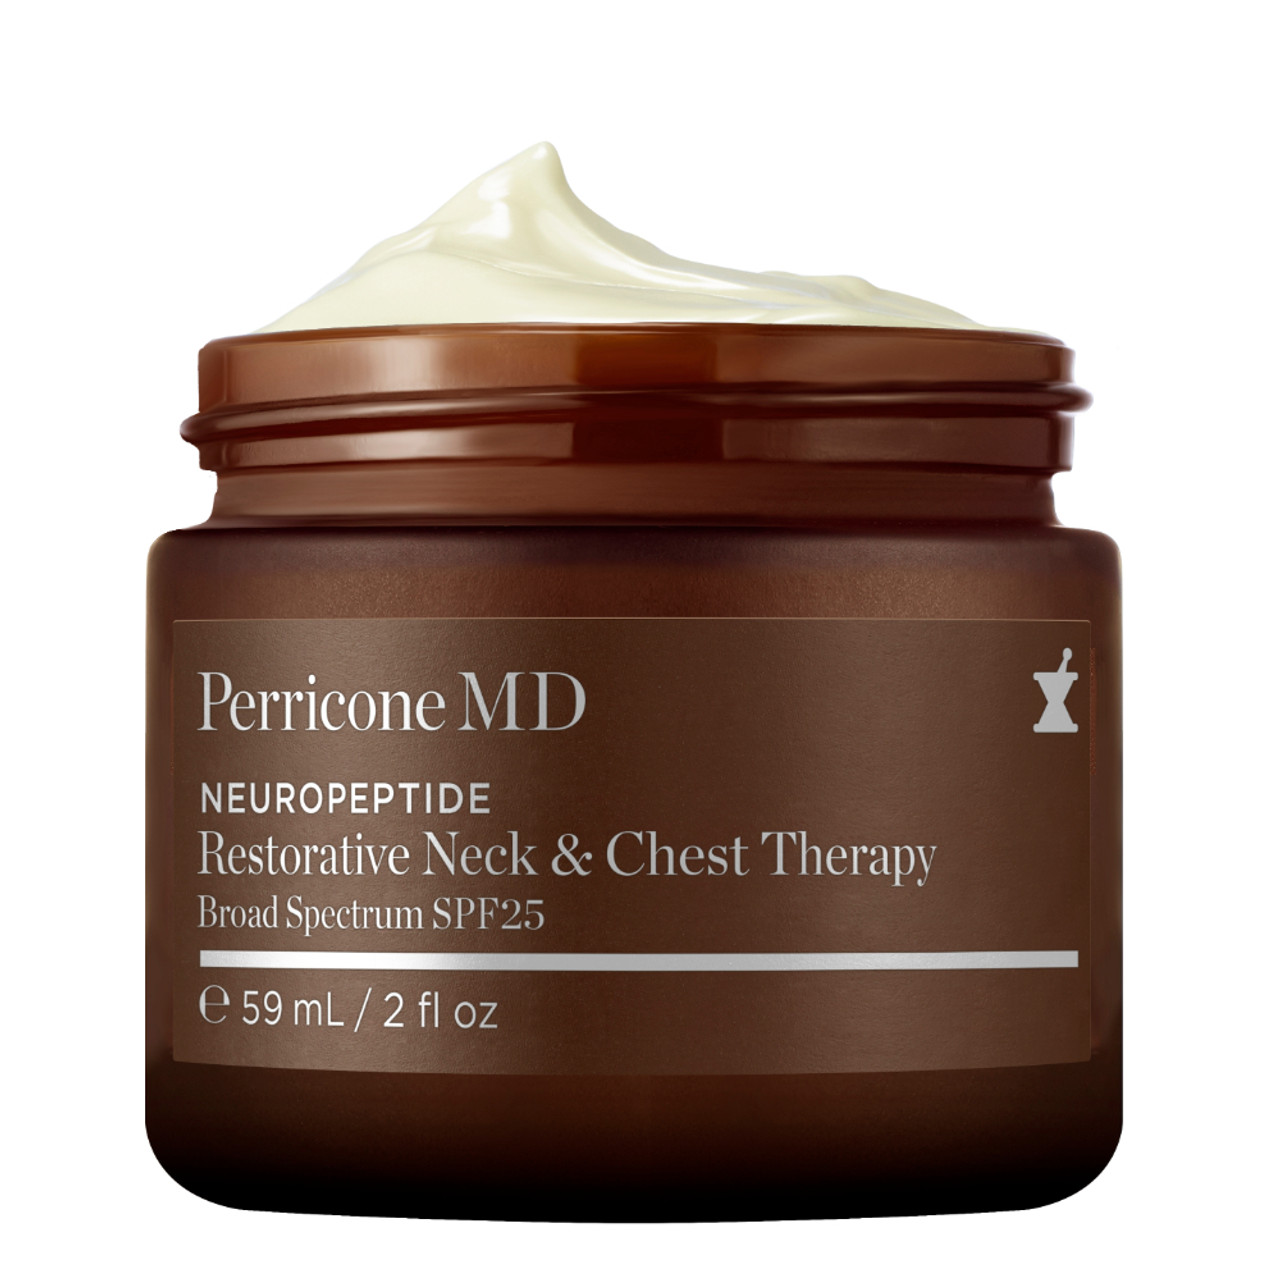 Perricone MD Neuropeptide Restorative Neck & Chest Therapy SPF 25 No Cap